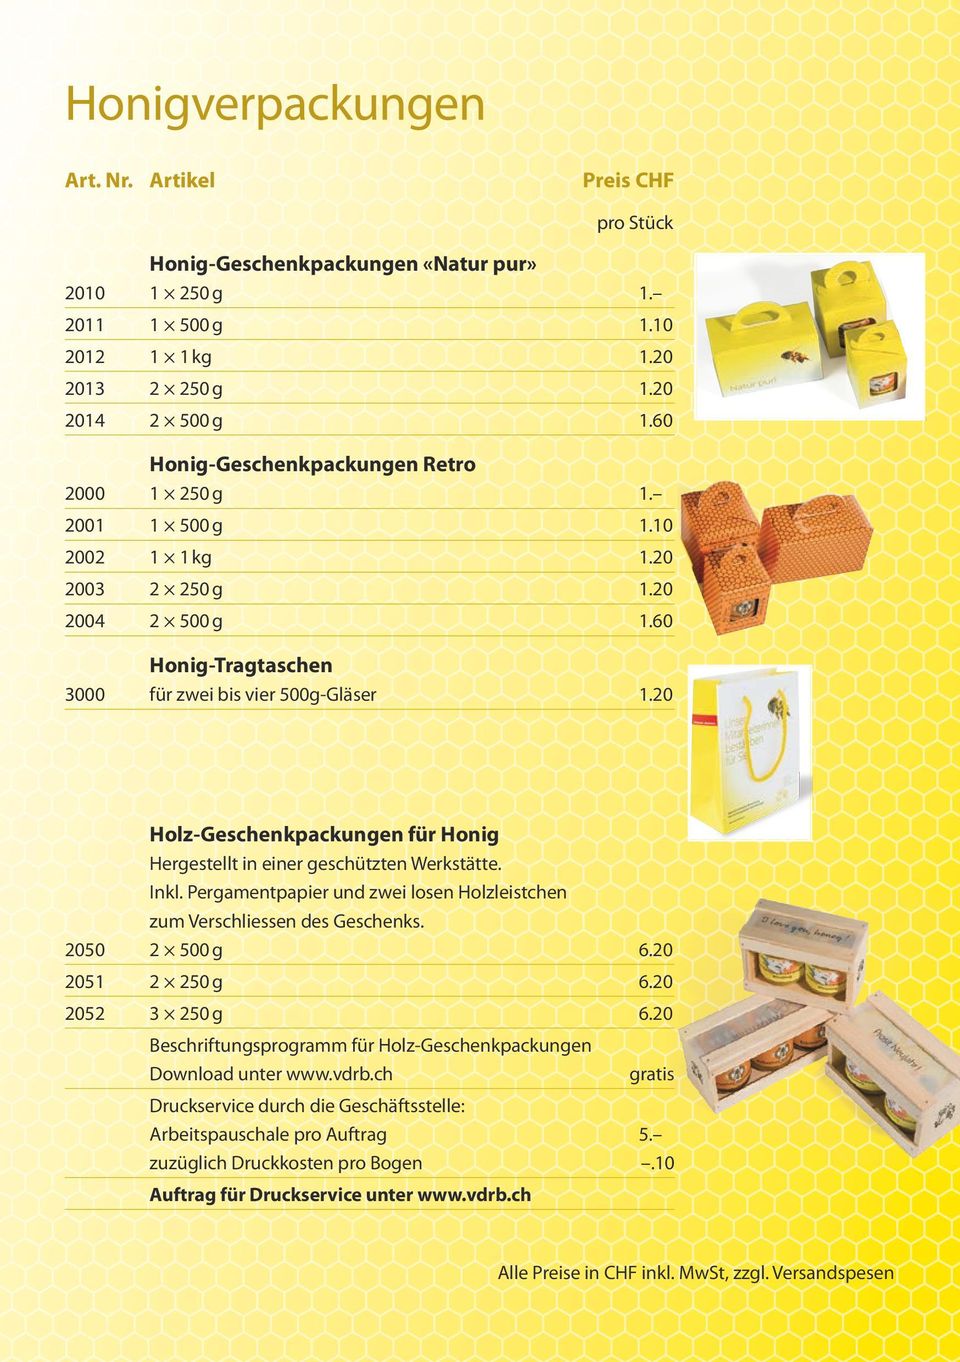 20 Holz-Geschenkpackungen für Honig Hergestellt in einer geschützten Werkstätte. Inkl. Pergamentpapier und zwei losen Holzleistchen zum Verschliessen des Geschenks. 2050 2 500 g 6.20 2051 2 250 g 6.